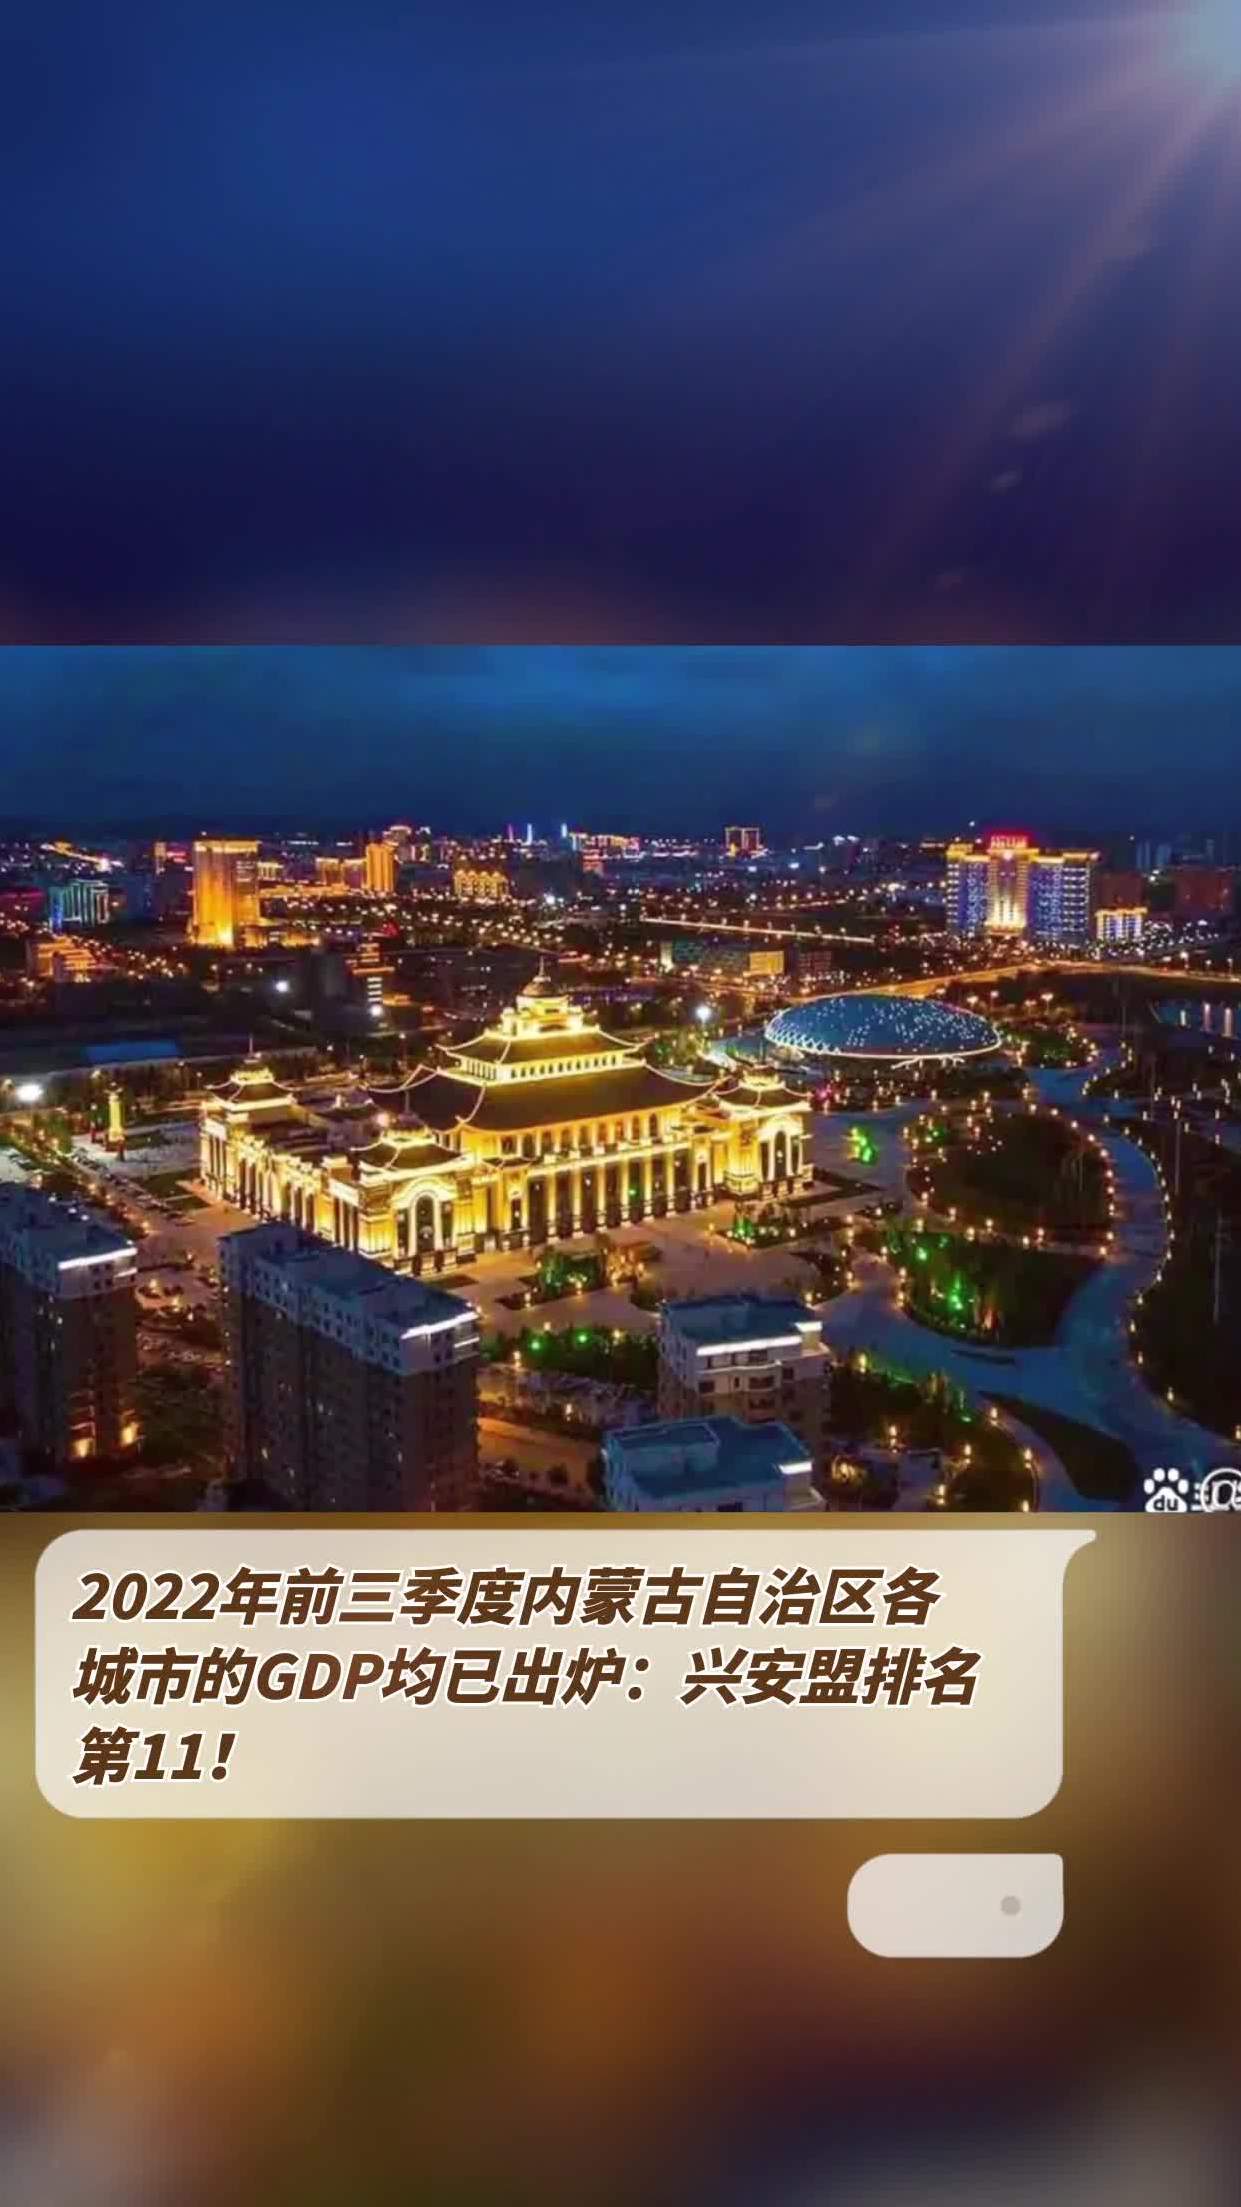 2022年前三季度内蒙古自治区各城市的gdp均已出炉:兴安盟排名第11!